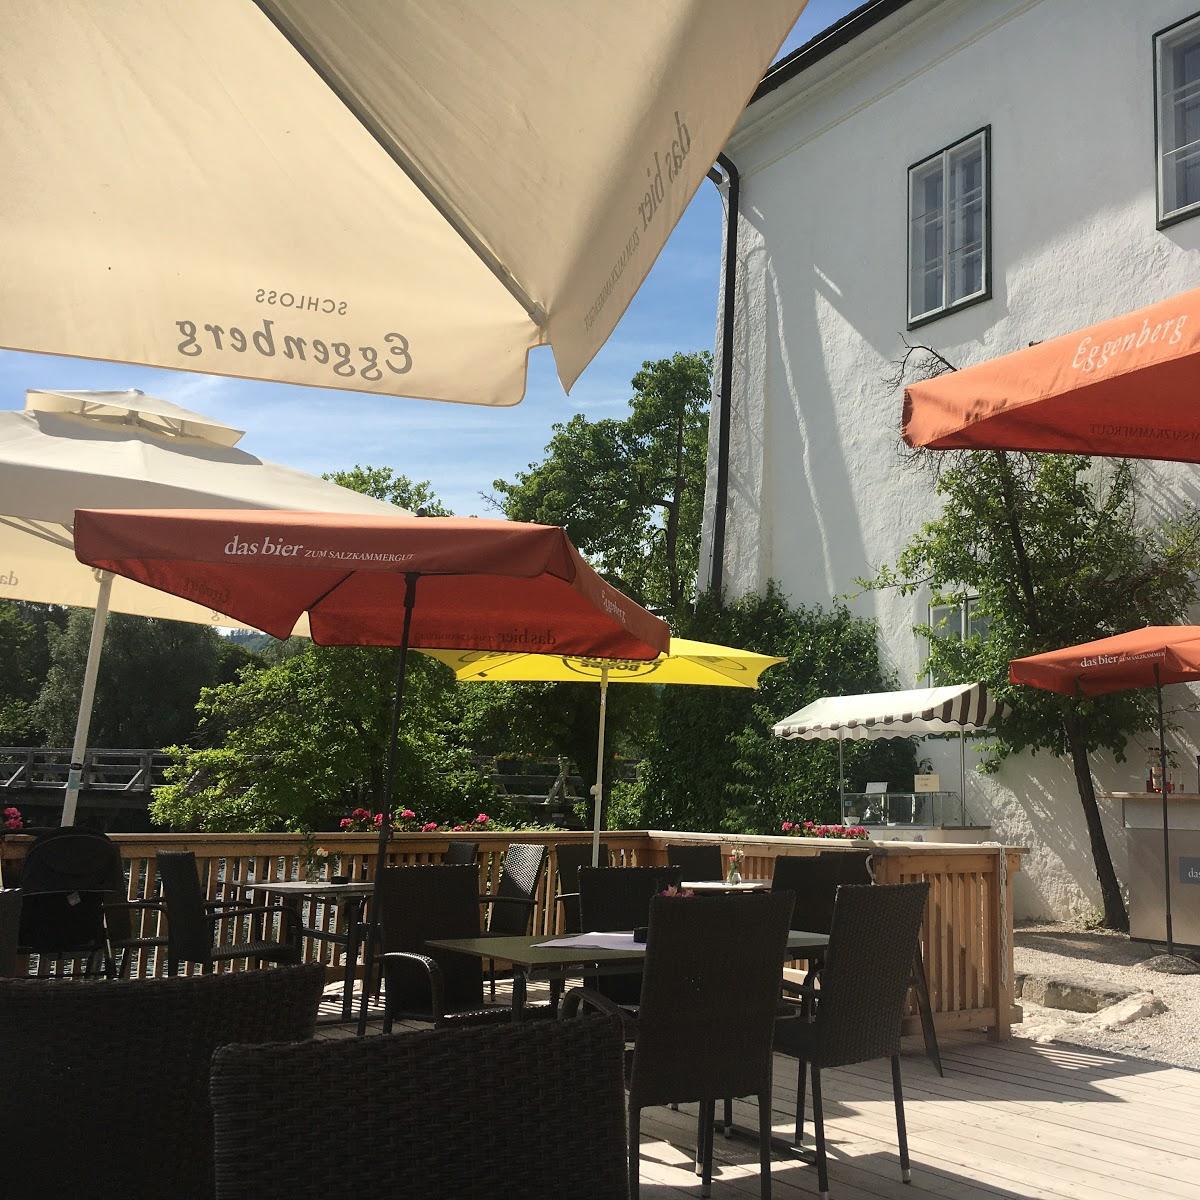 Restaurant "Seeschloss Orth" in Gmunden